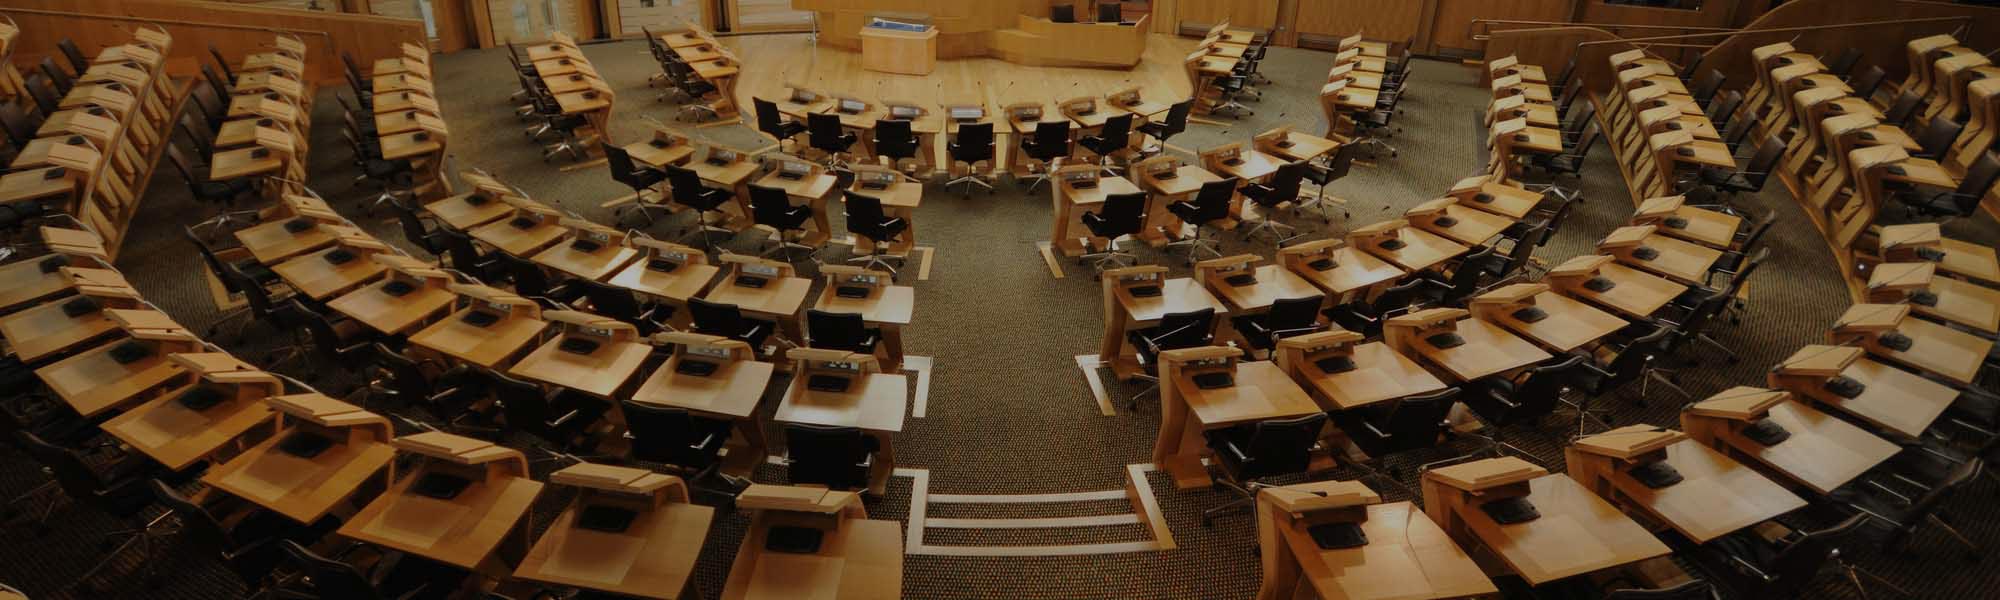 Scottish parliament debating chamber